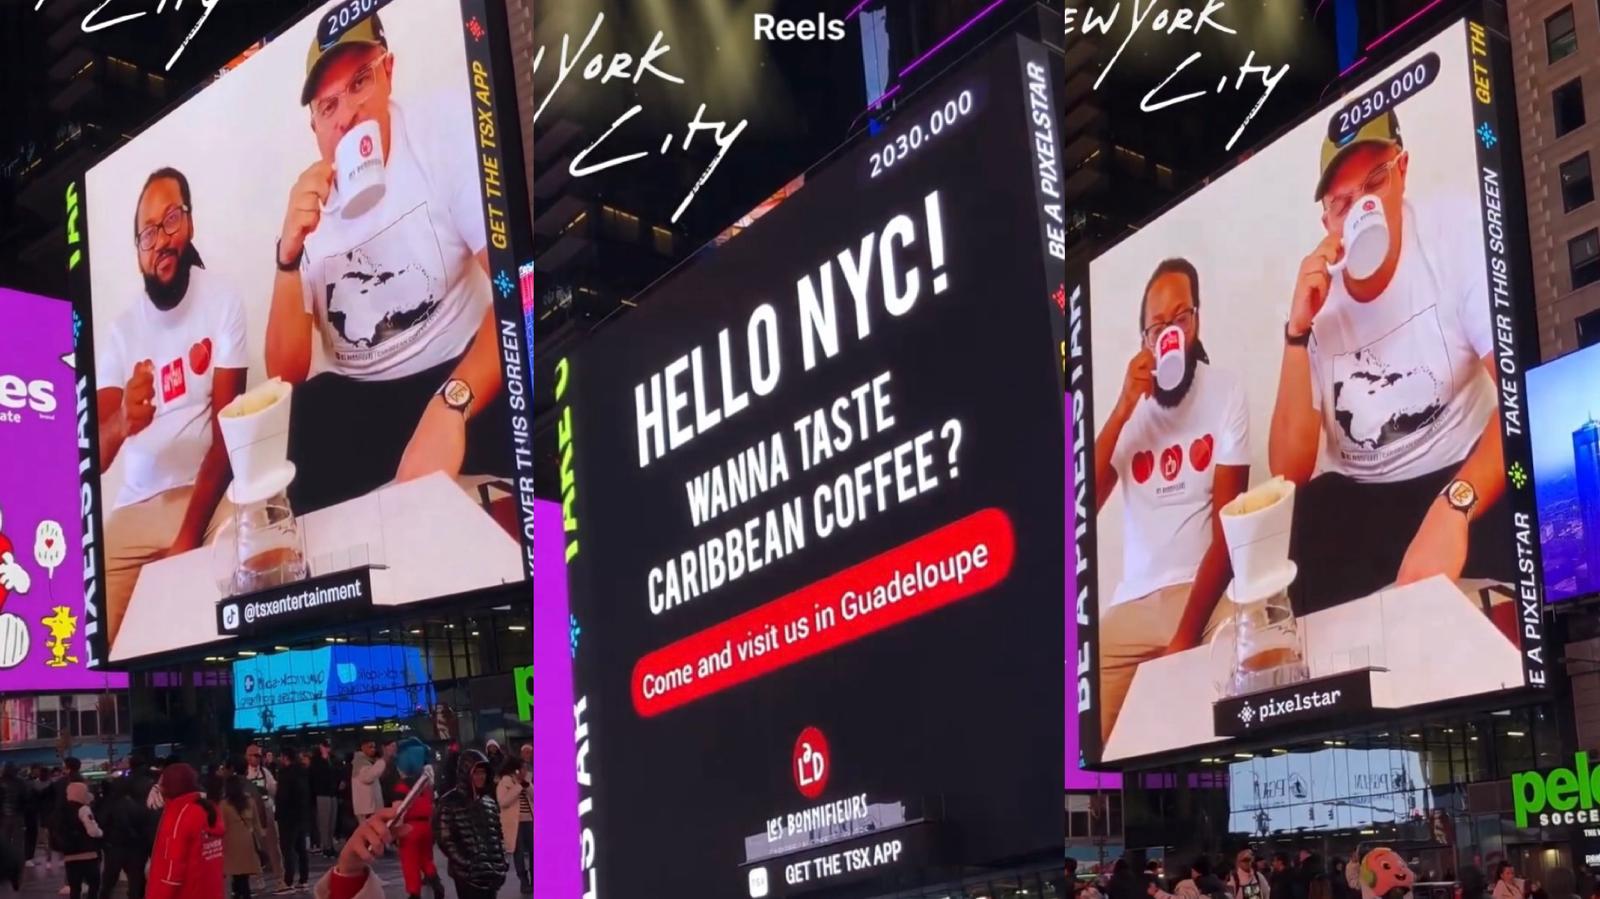     Les Bonnifieurs affichés en grand à Times Square !

